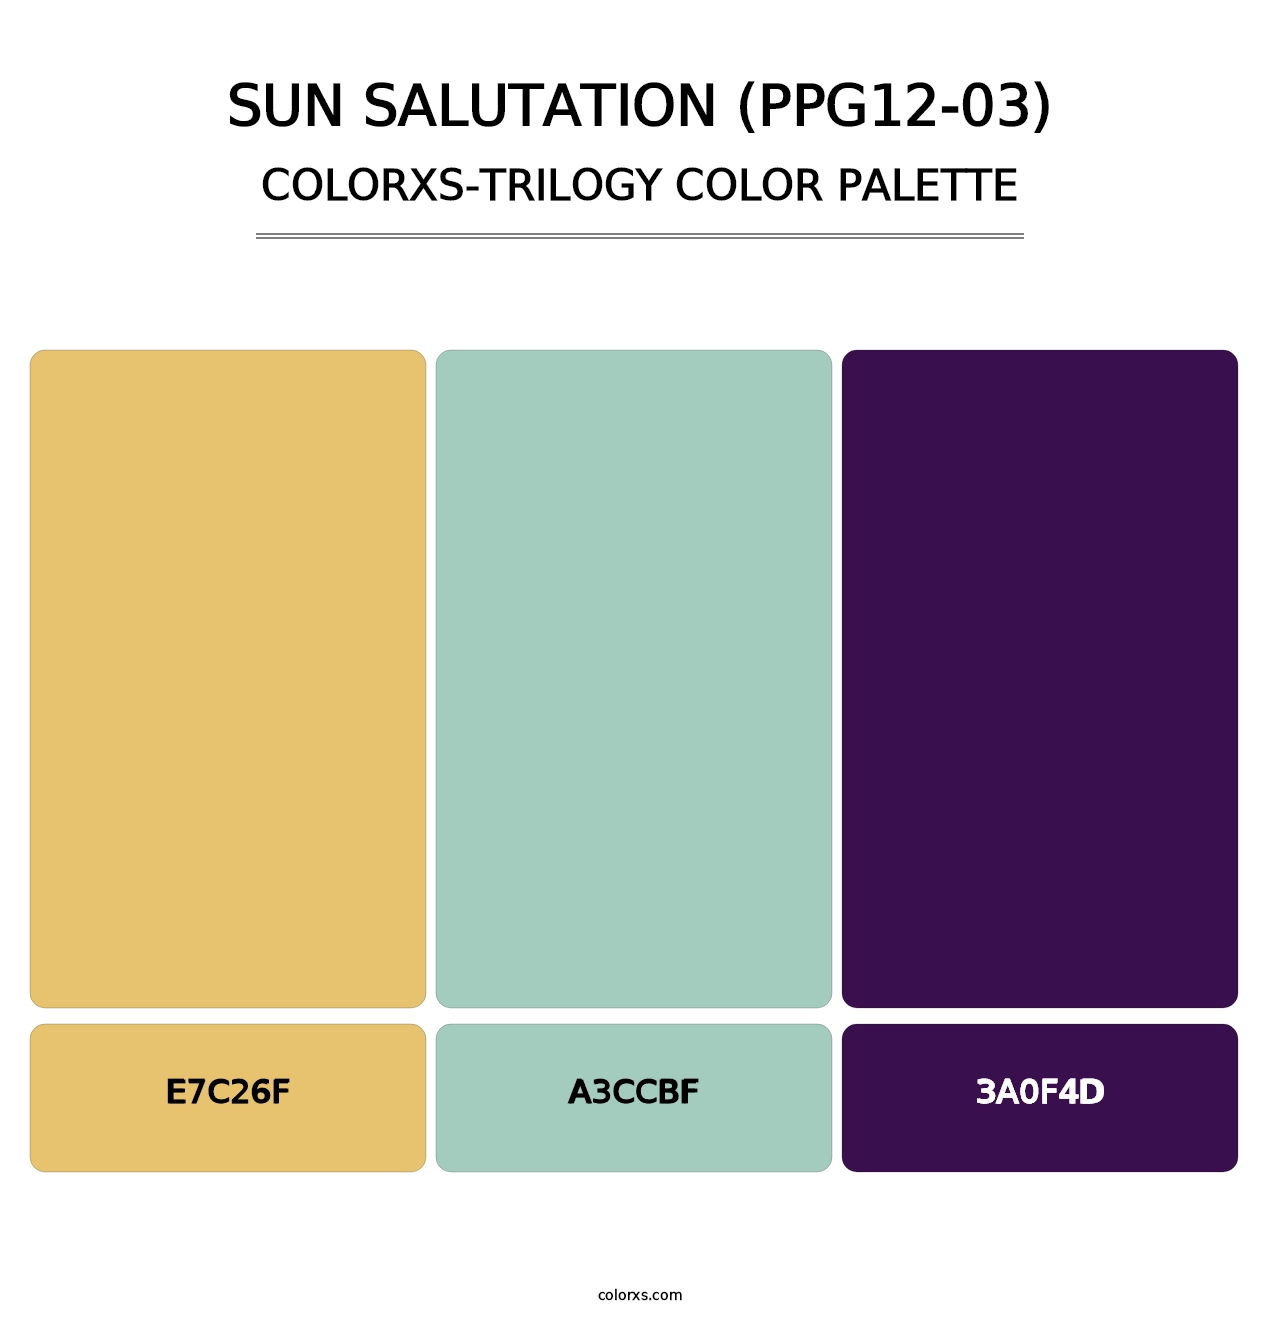 Sun Salutation (PPG12-03) - Colorxs Trilogy Palette